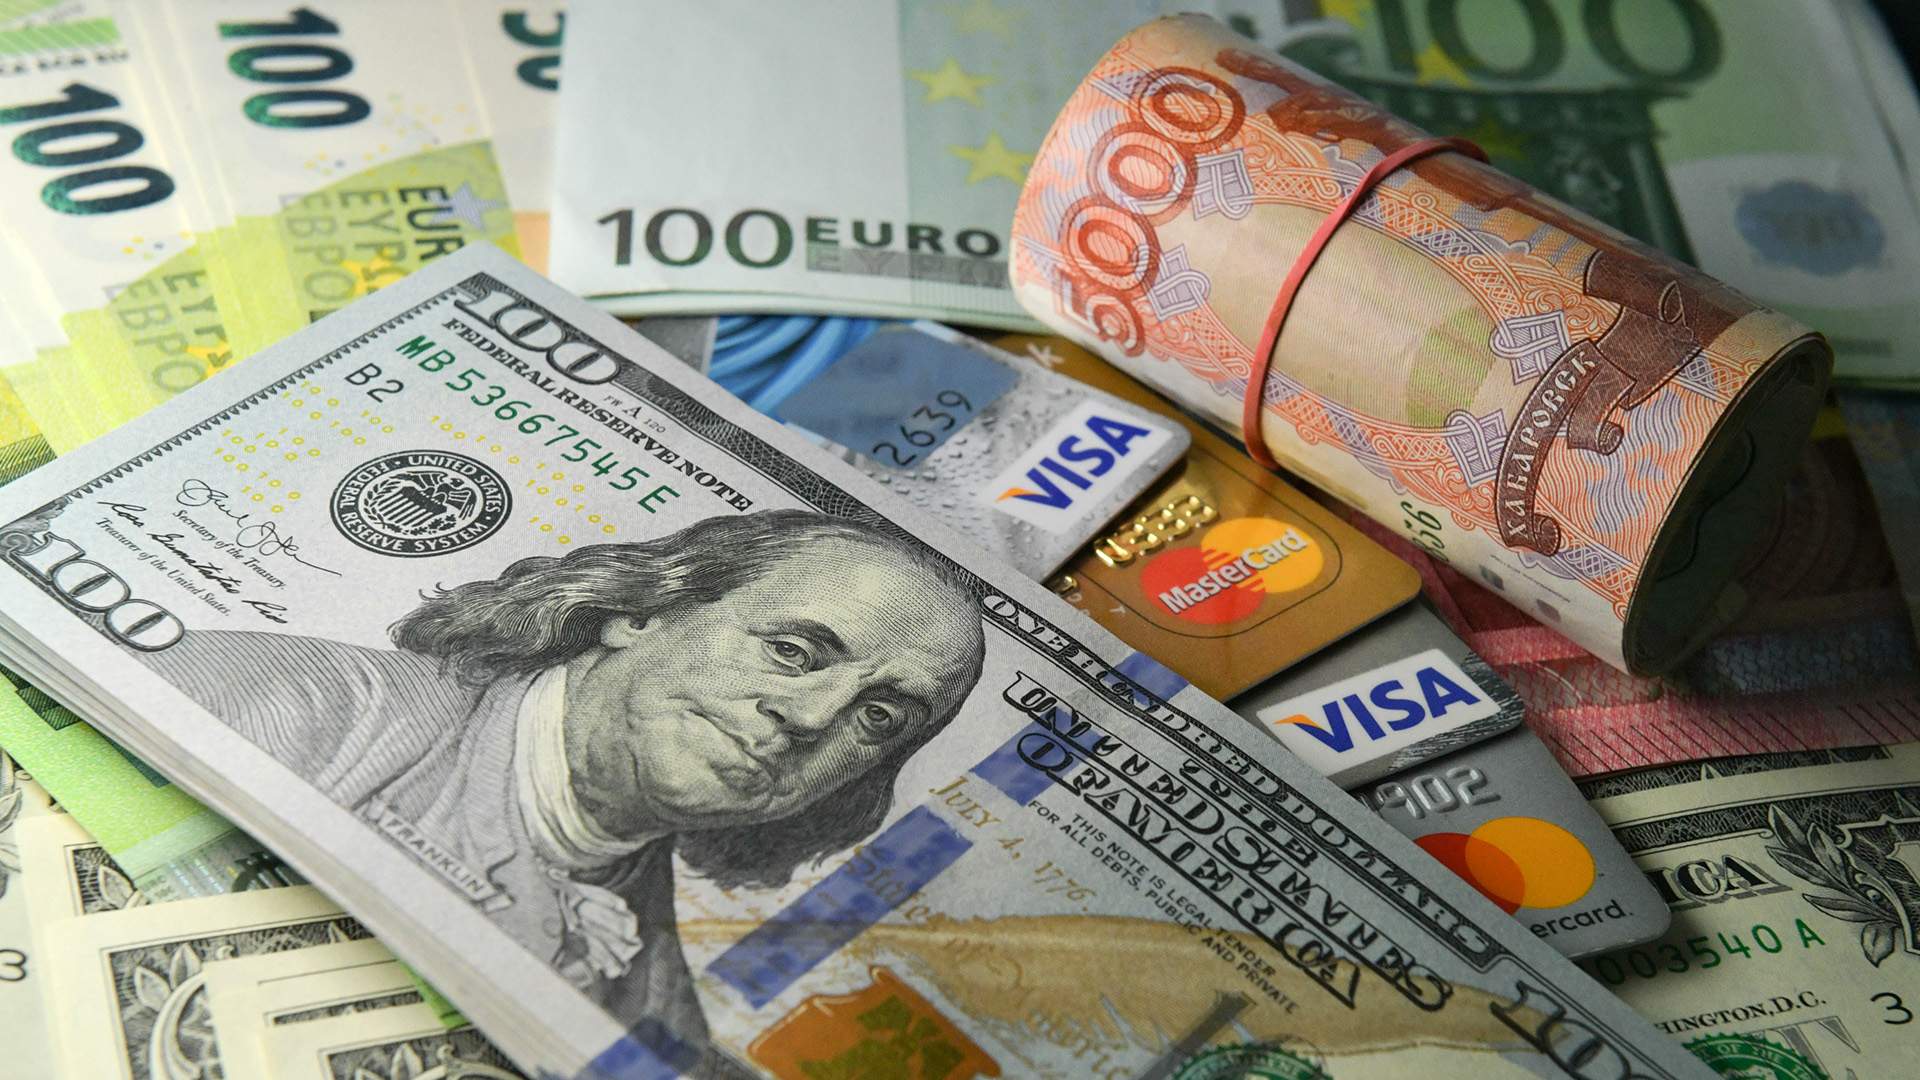 Банки обмена валют перми обмен биткоин скв на конюшенной